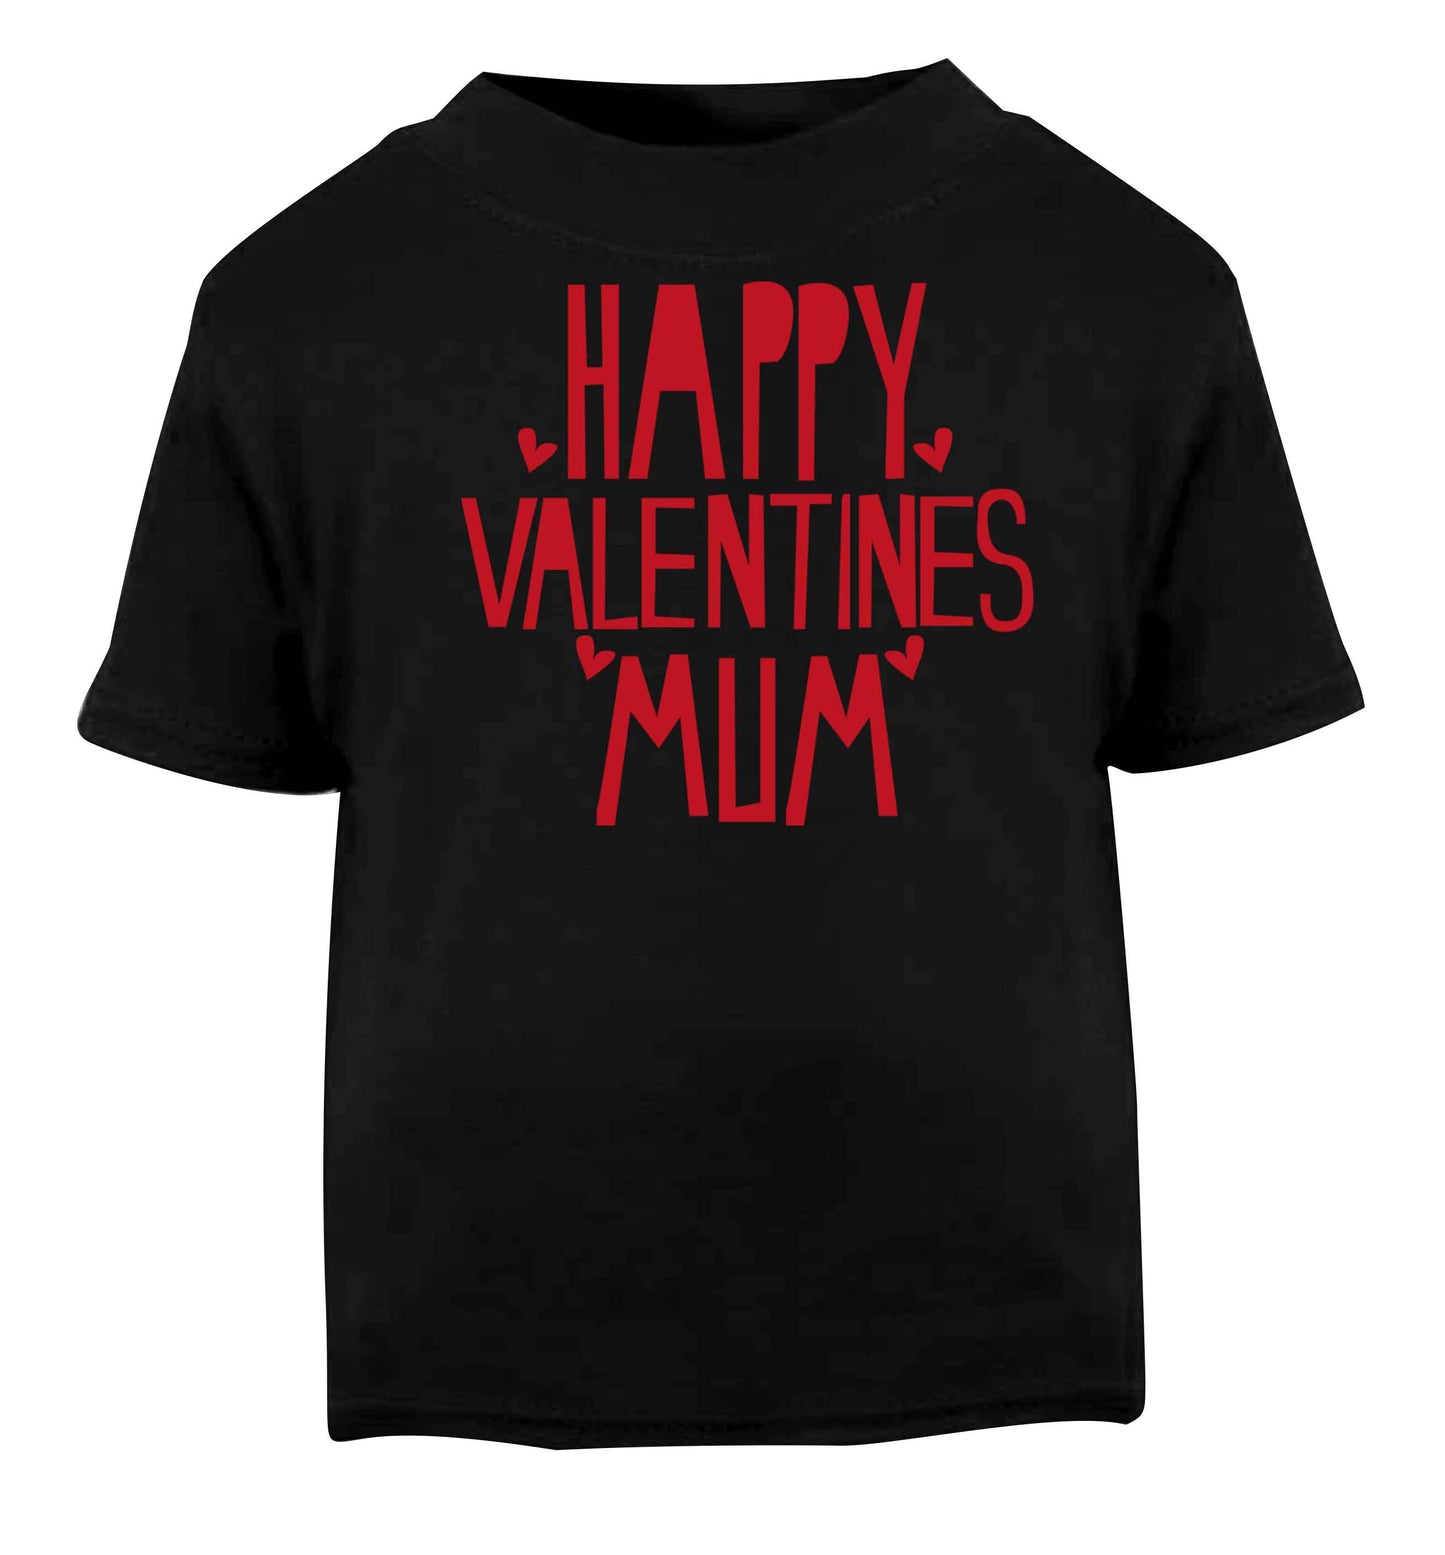 Happy valentines mum Black baby toddler Tshirt 2 years